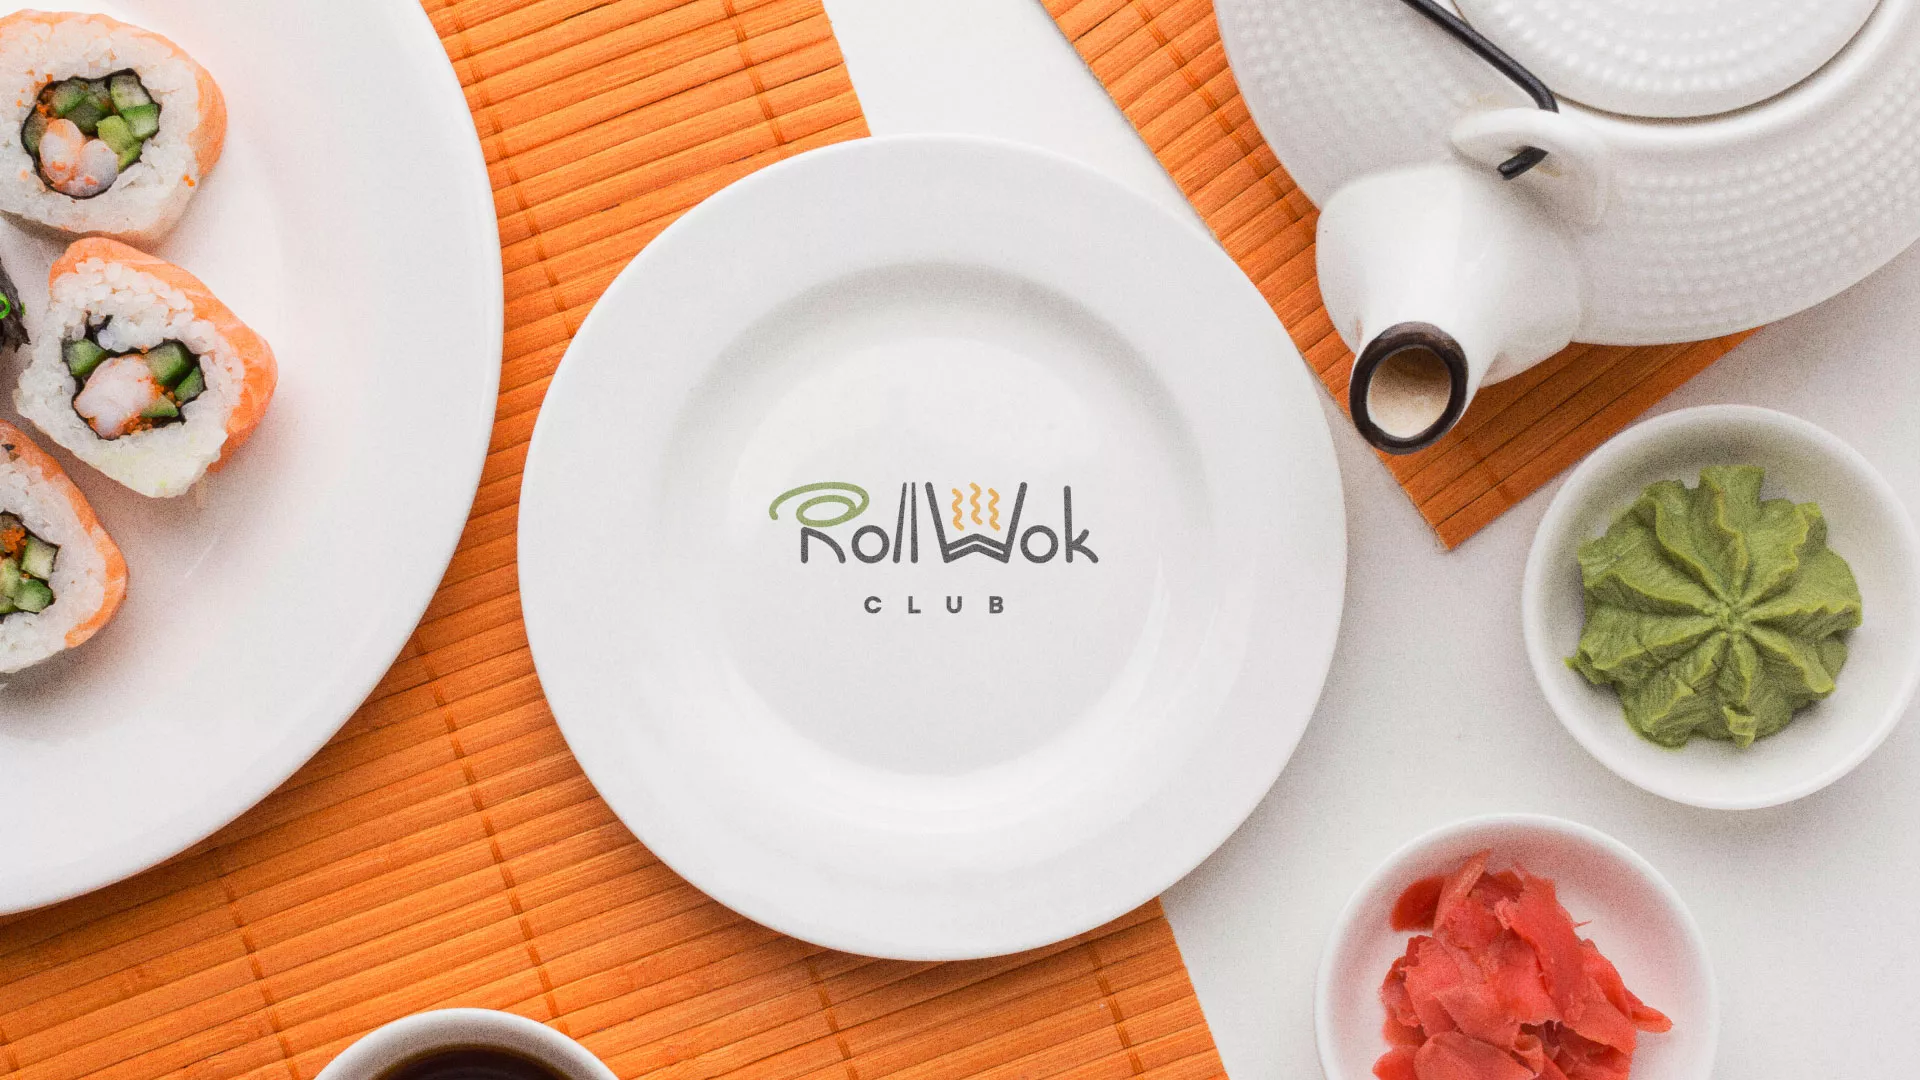 Разработка логотипа и фирменного стиля суши-бара «Roll Wok Club» в Щучье